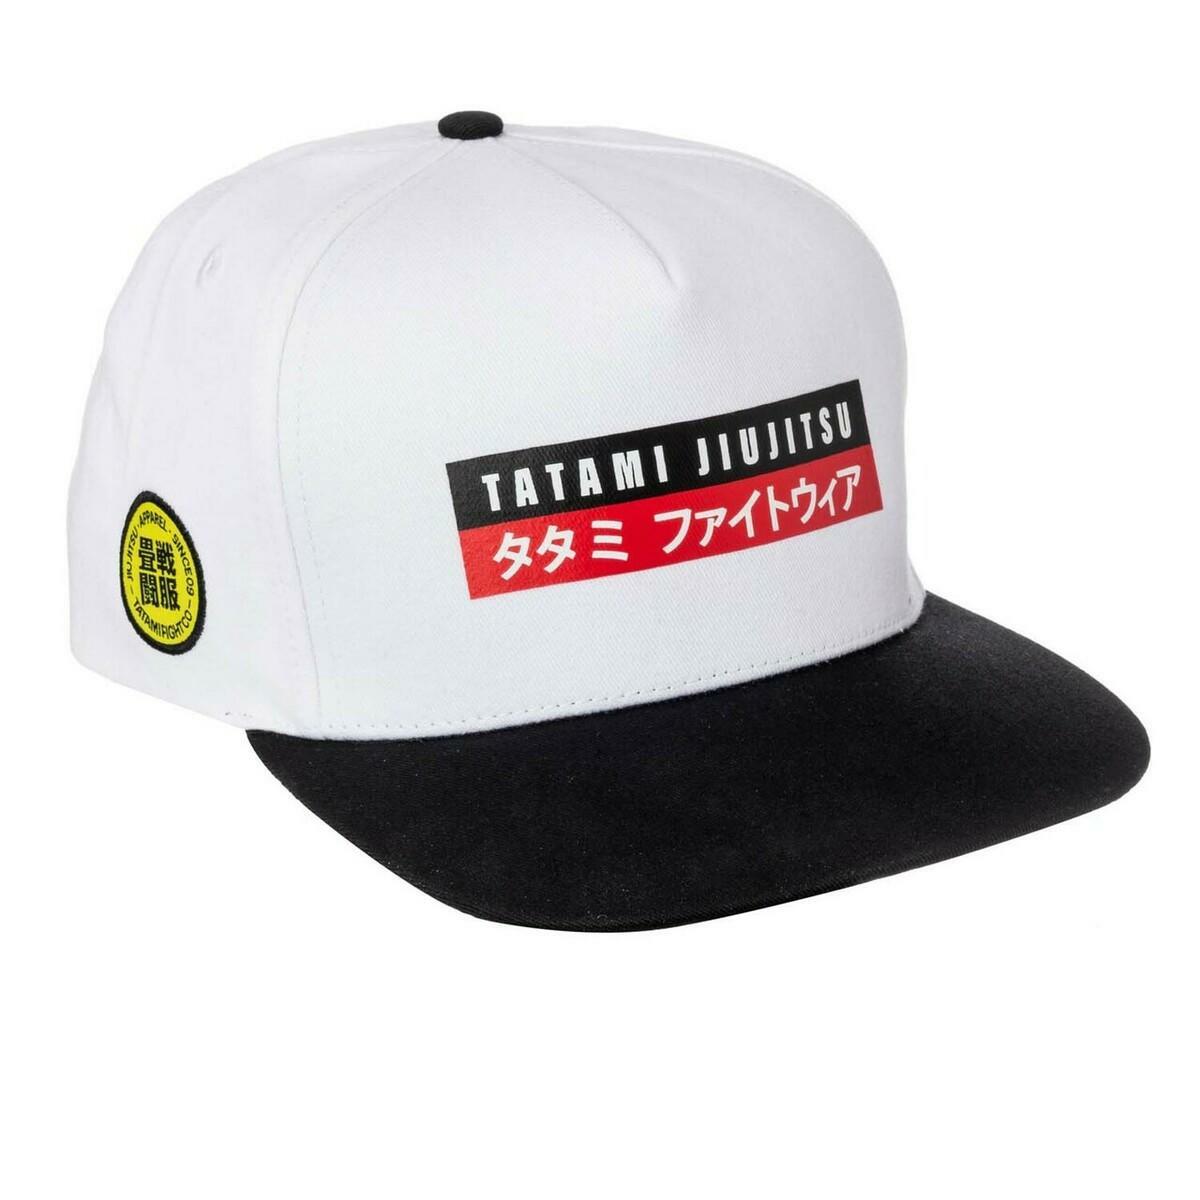 Tatami Fightwear Urban Snapback Cap Black PTATSBH004BK